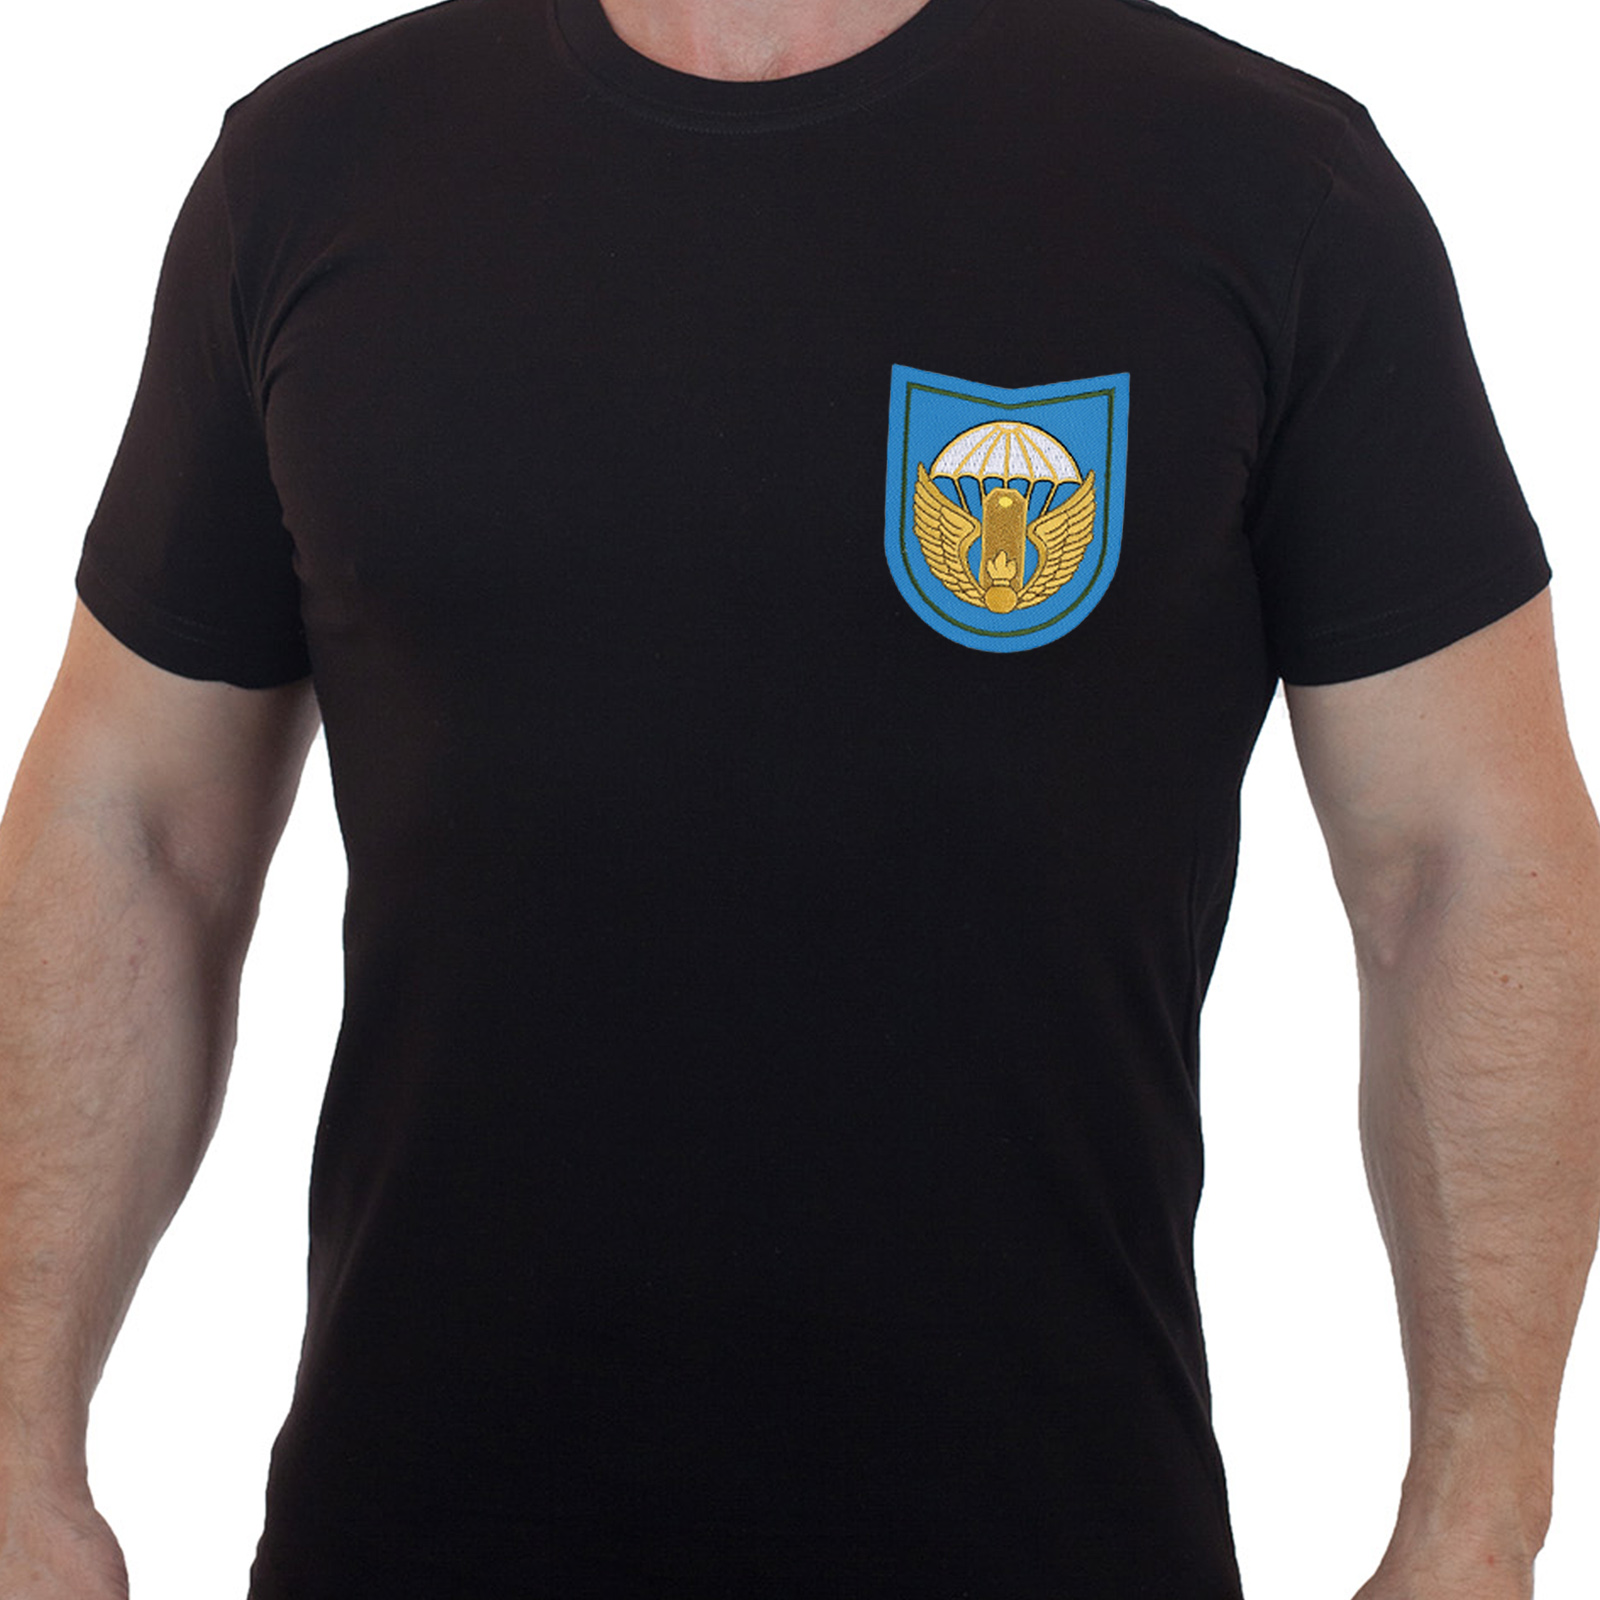 Купить черную армейскую футболку с вышитым знаком 242-го УЦ ВДВ по экономичной цене